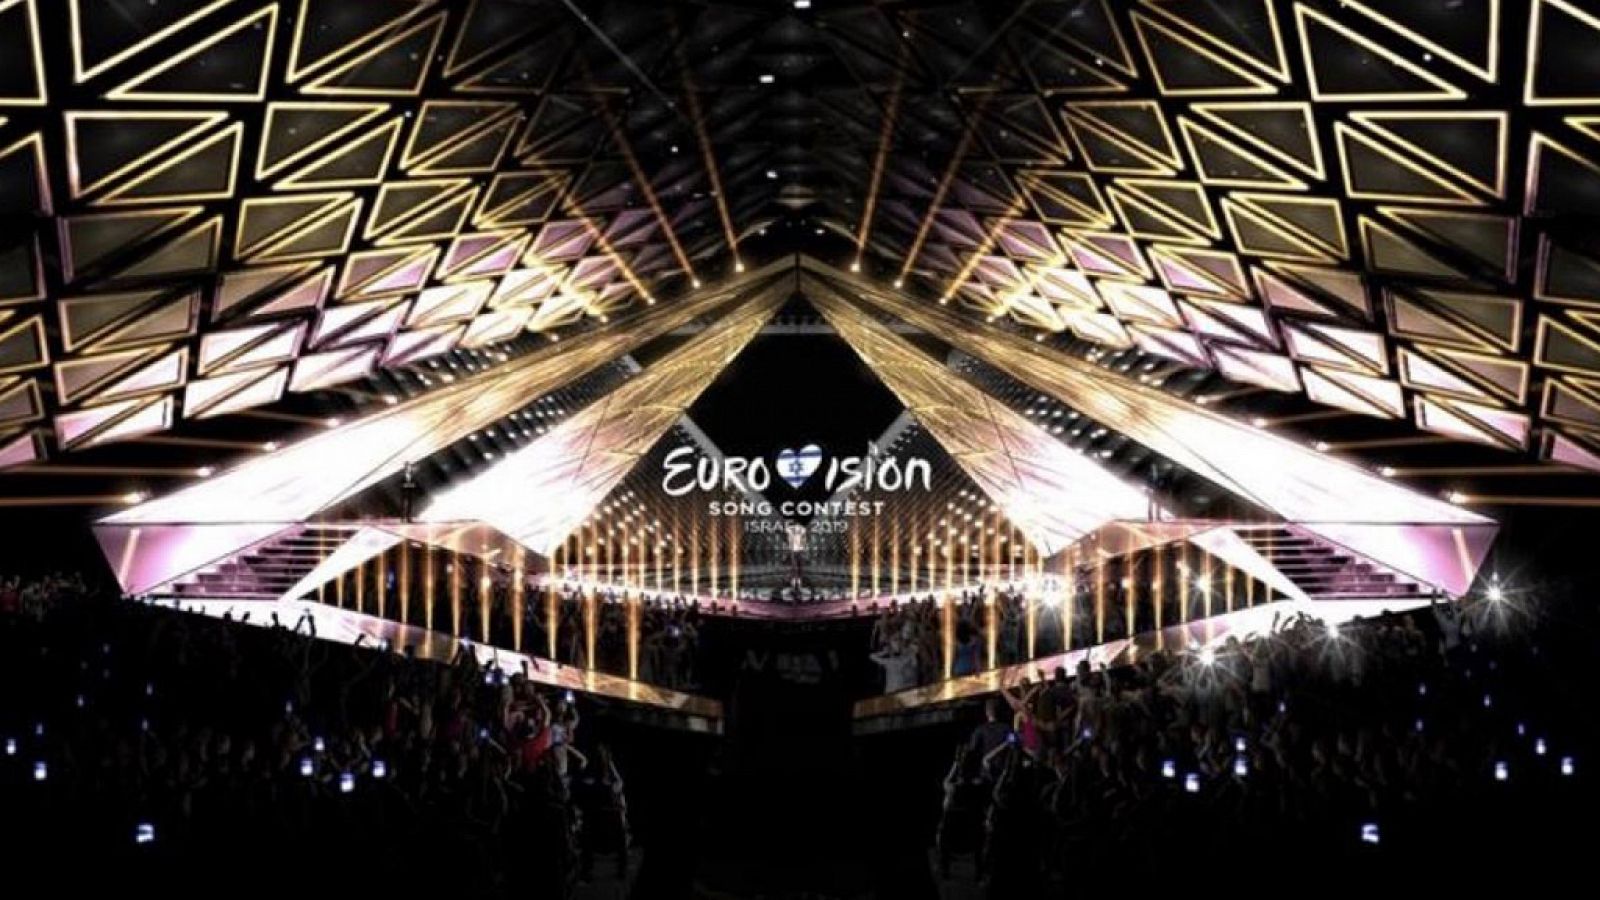 Primera imagen del escenario de Eurovisión 2019